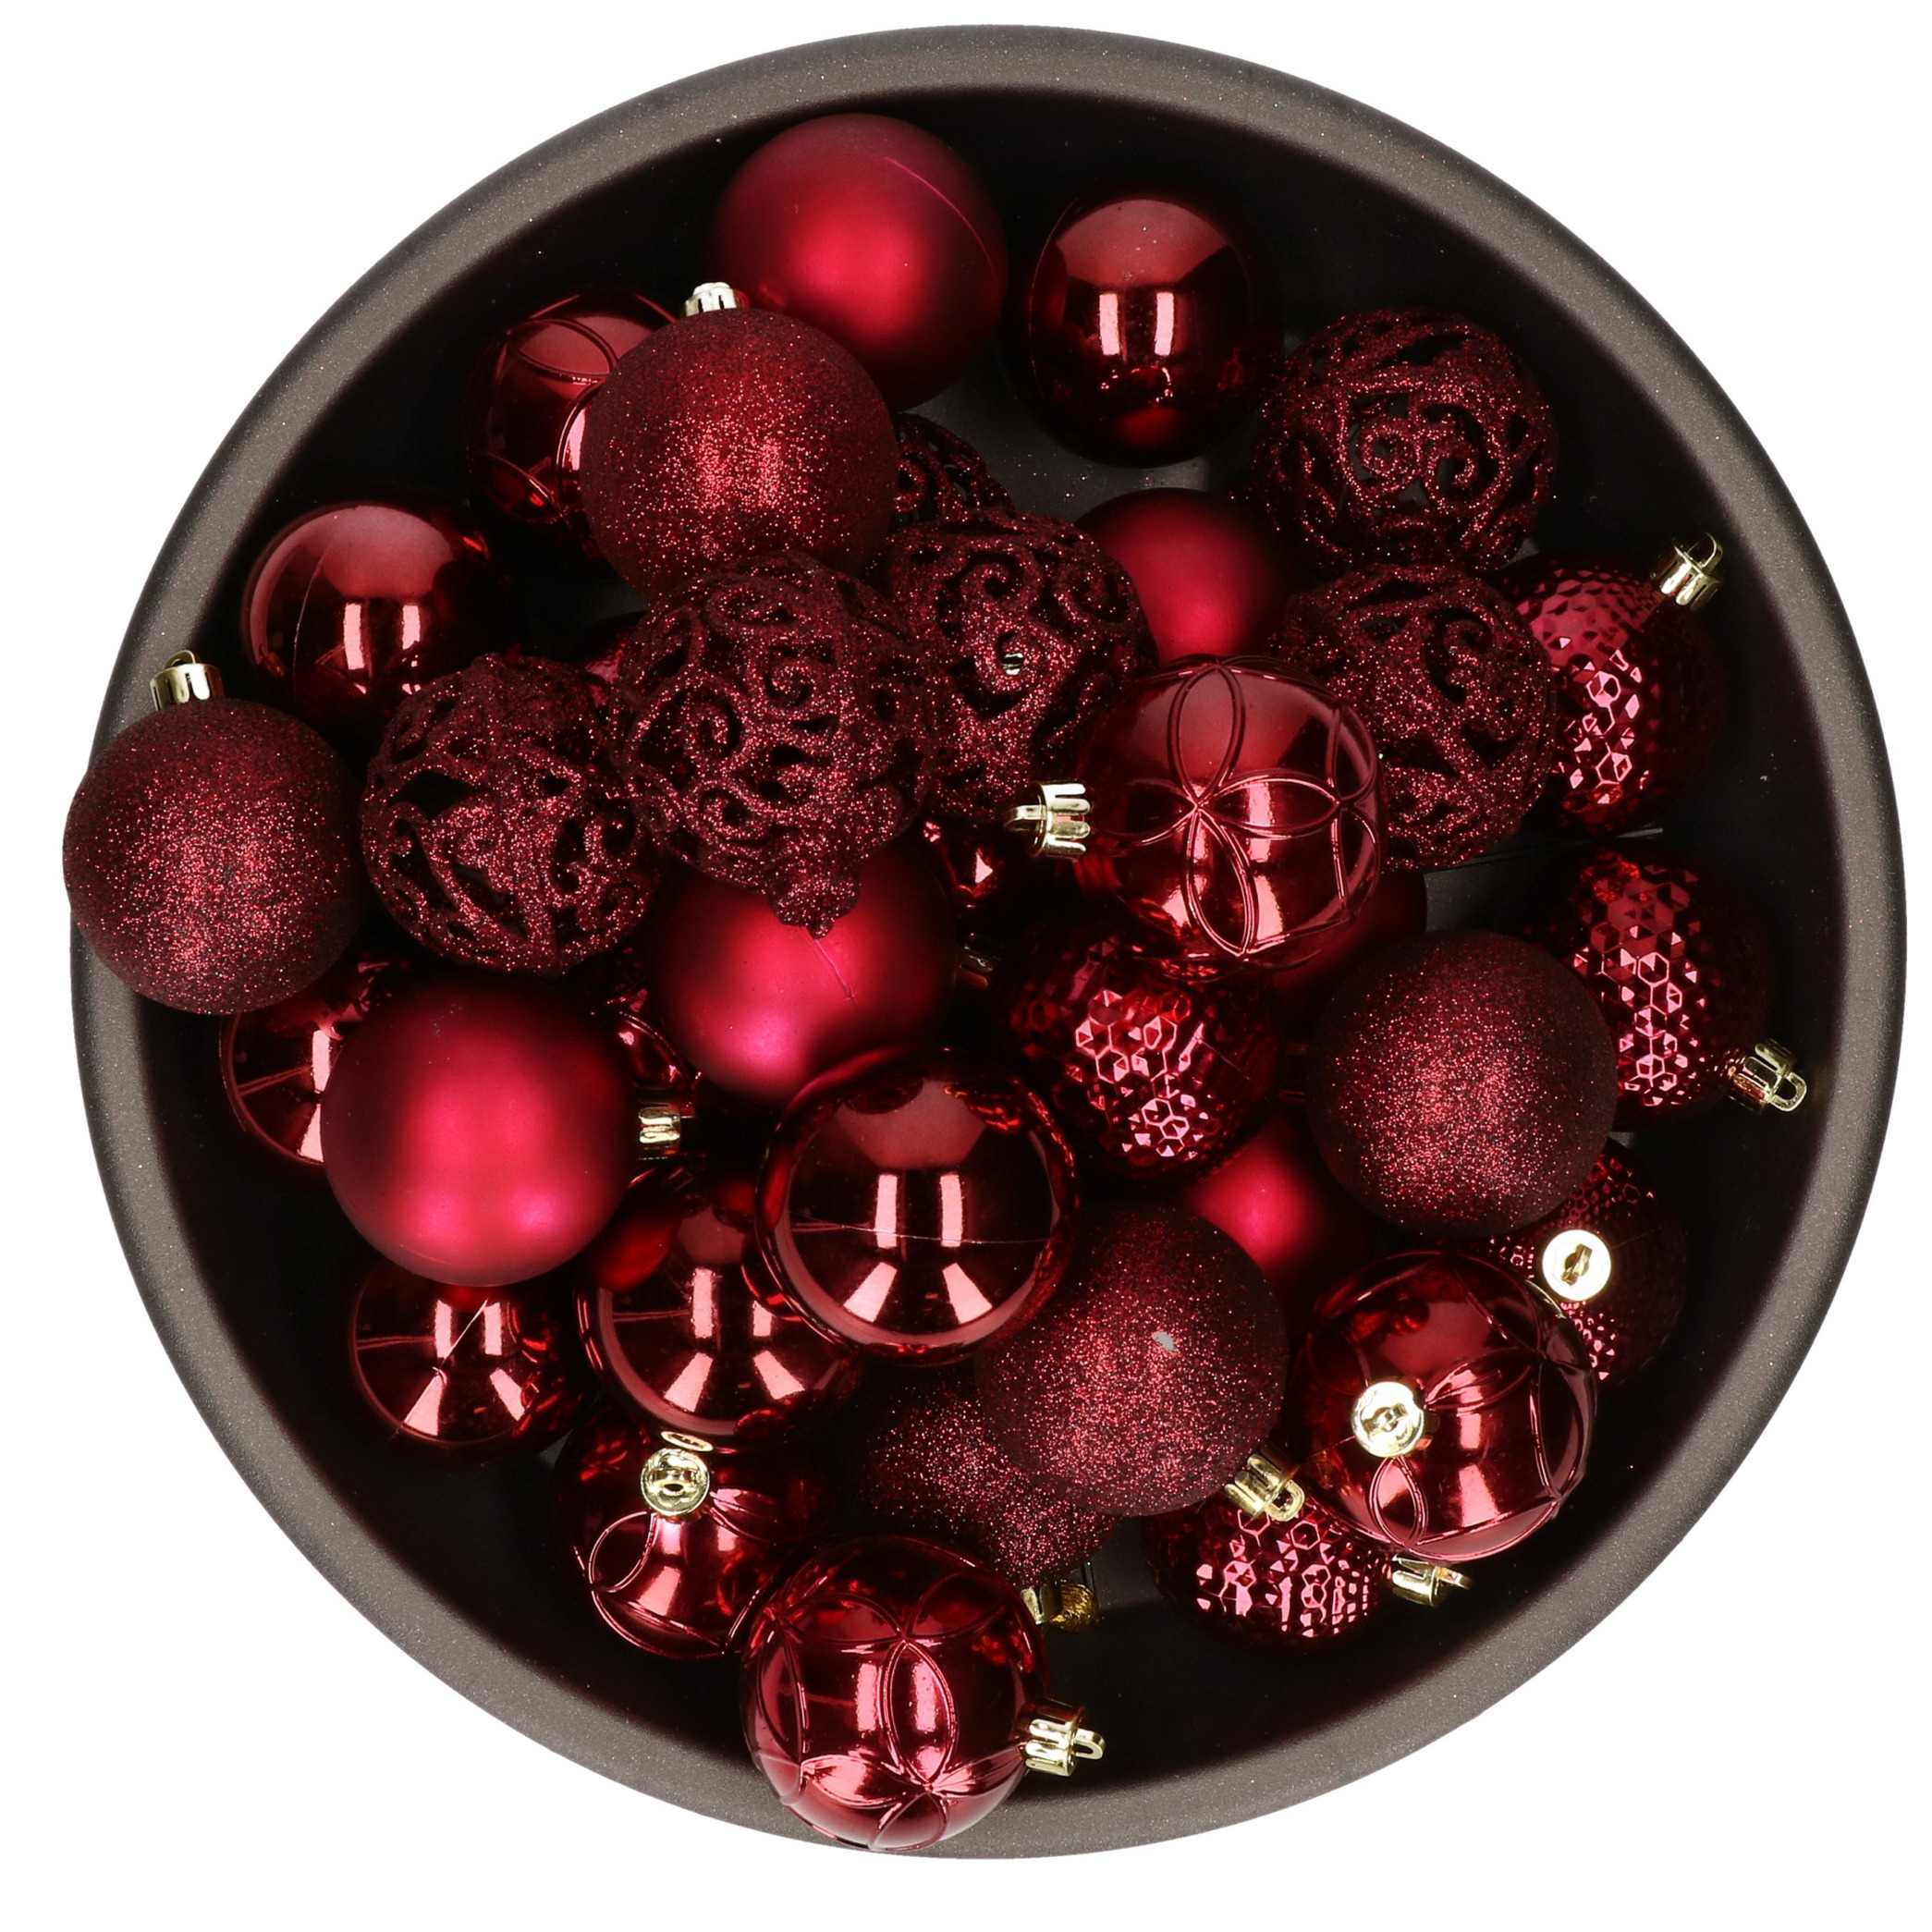 37x stuks kunststof kerstballen donkerrood (oxblood) 6 cm glans-mat-glitter mix